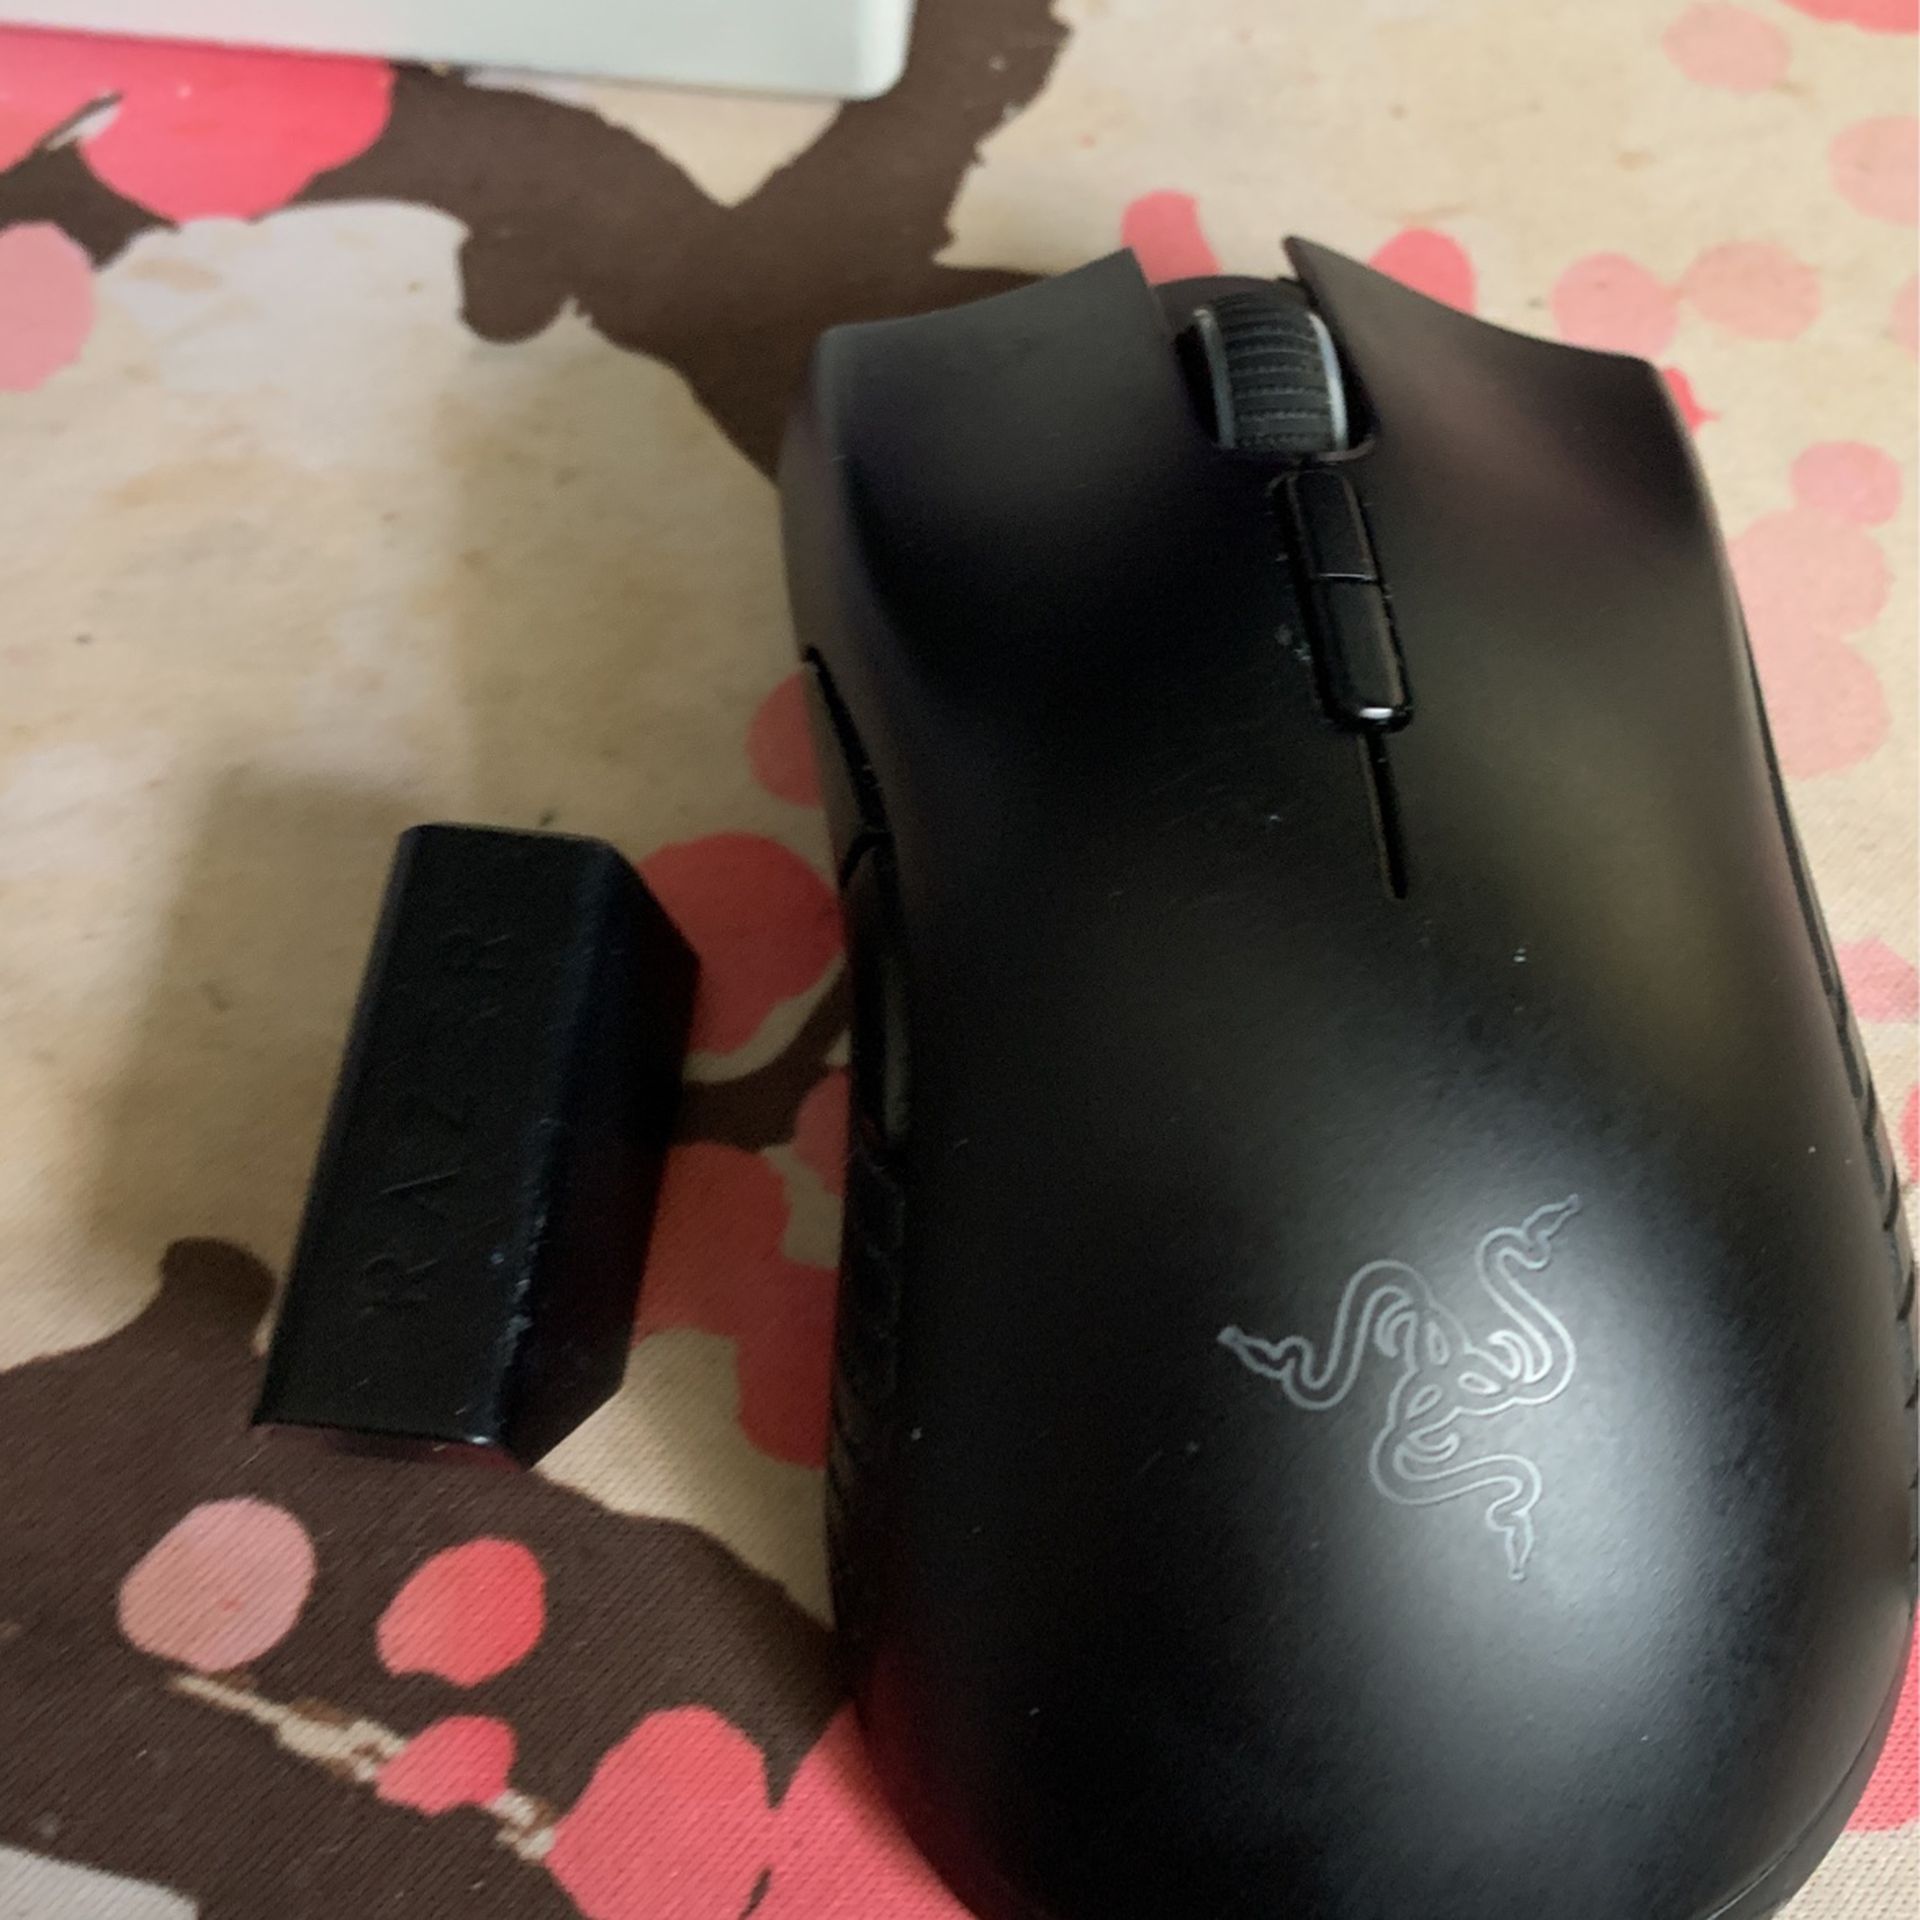 Razer Mamba Wireless Gaming Mouse 